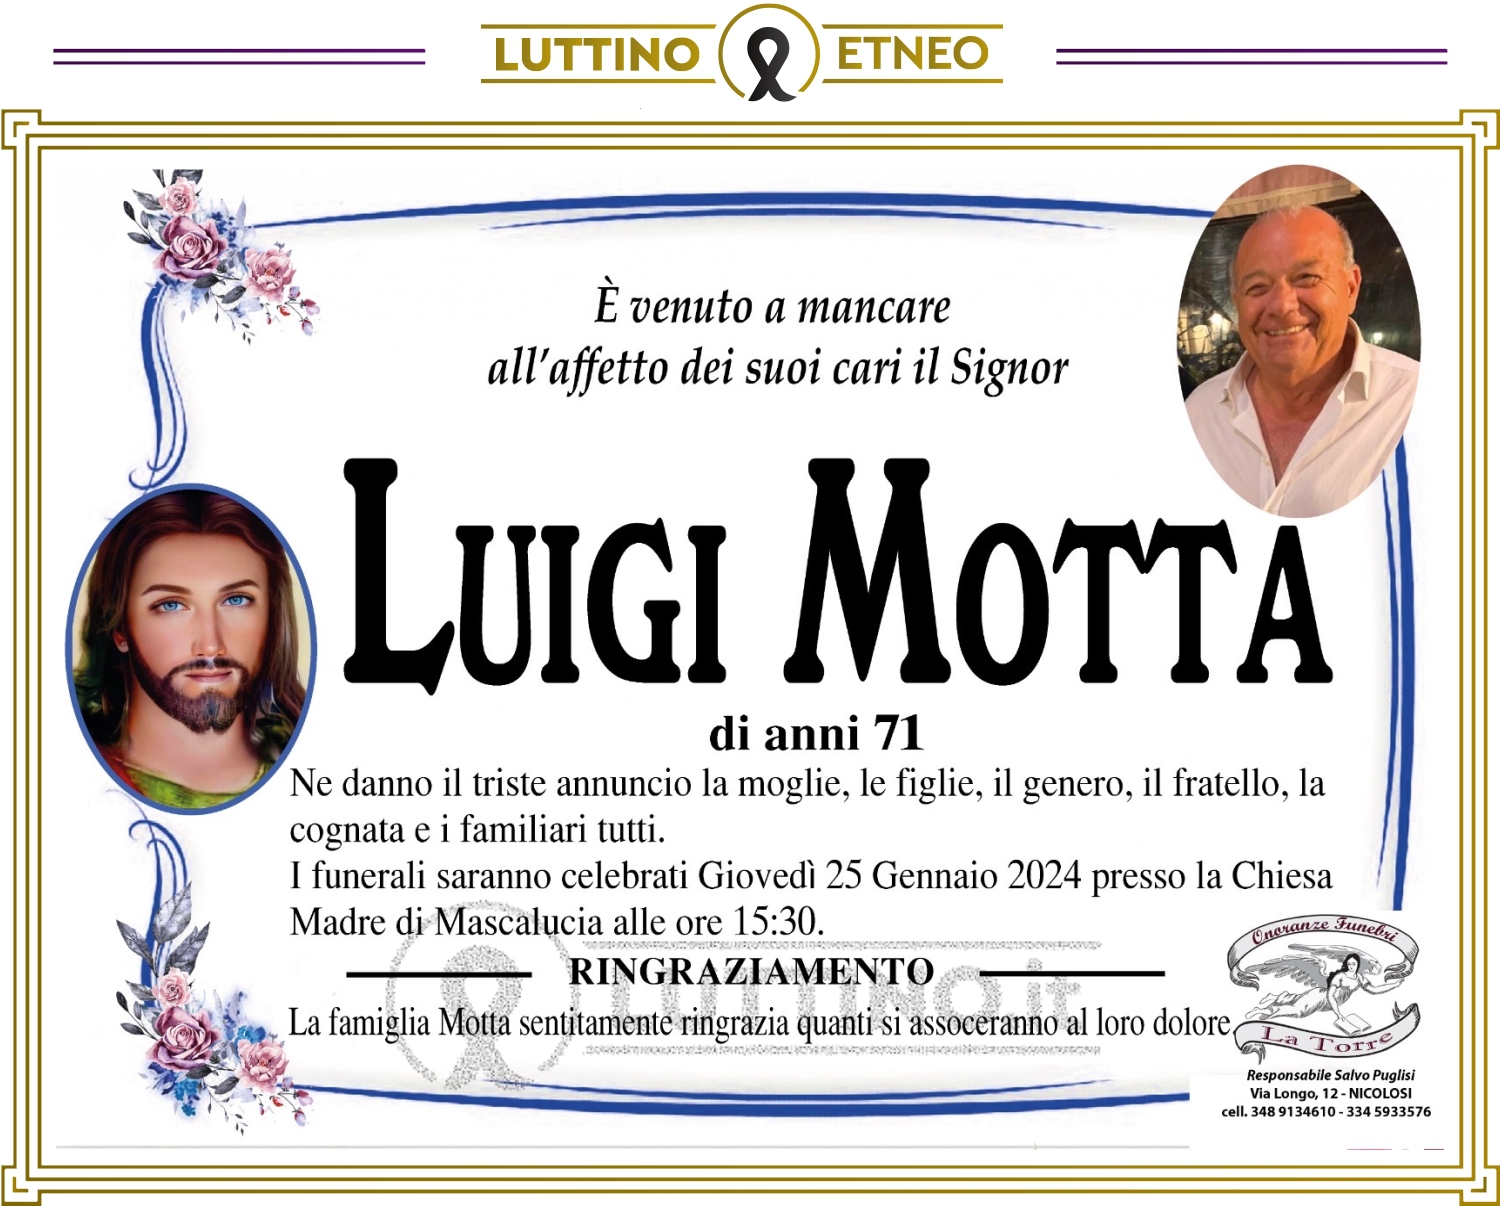 Luigi Motta